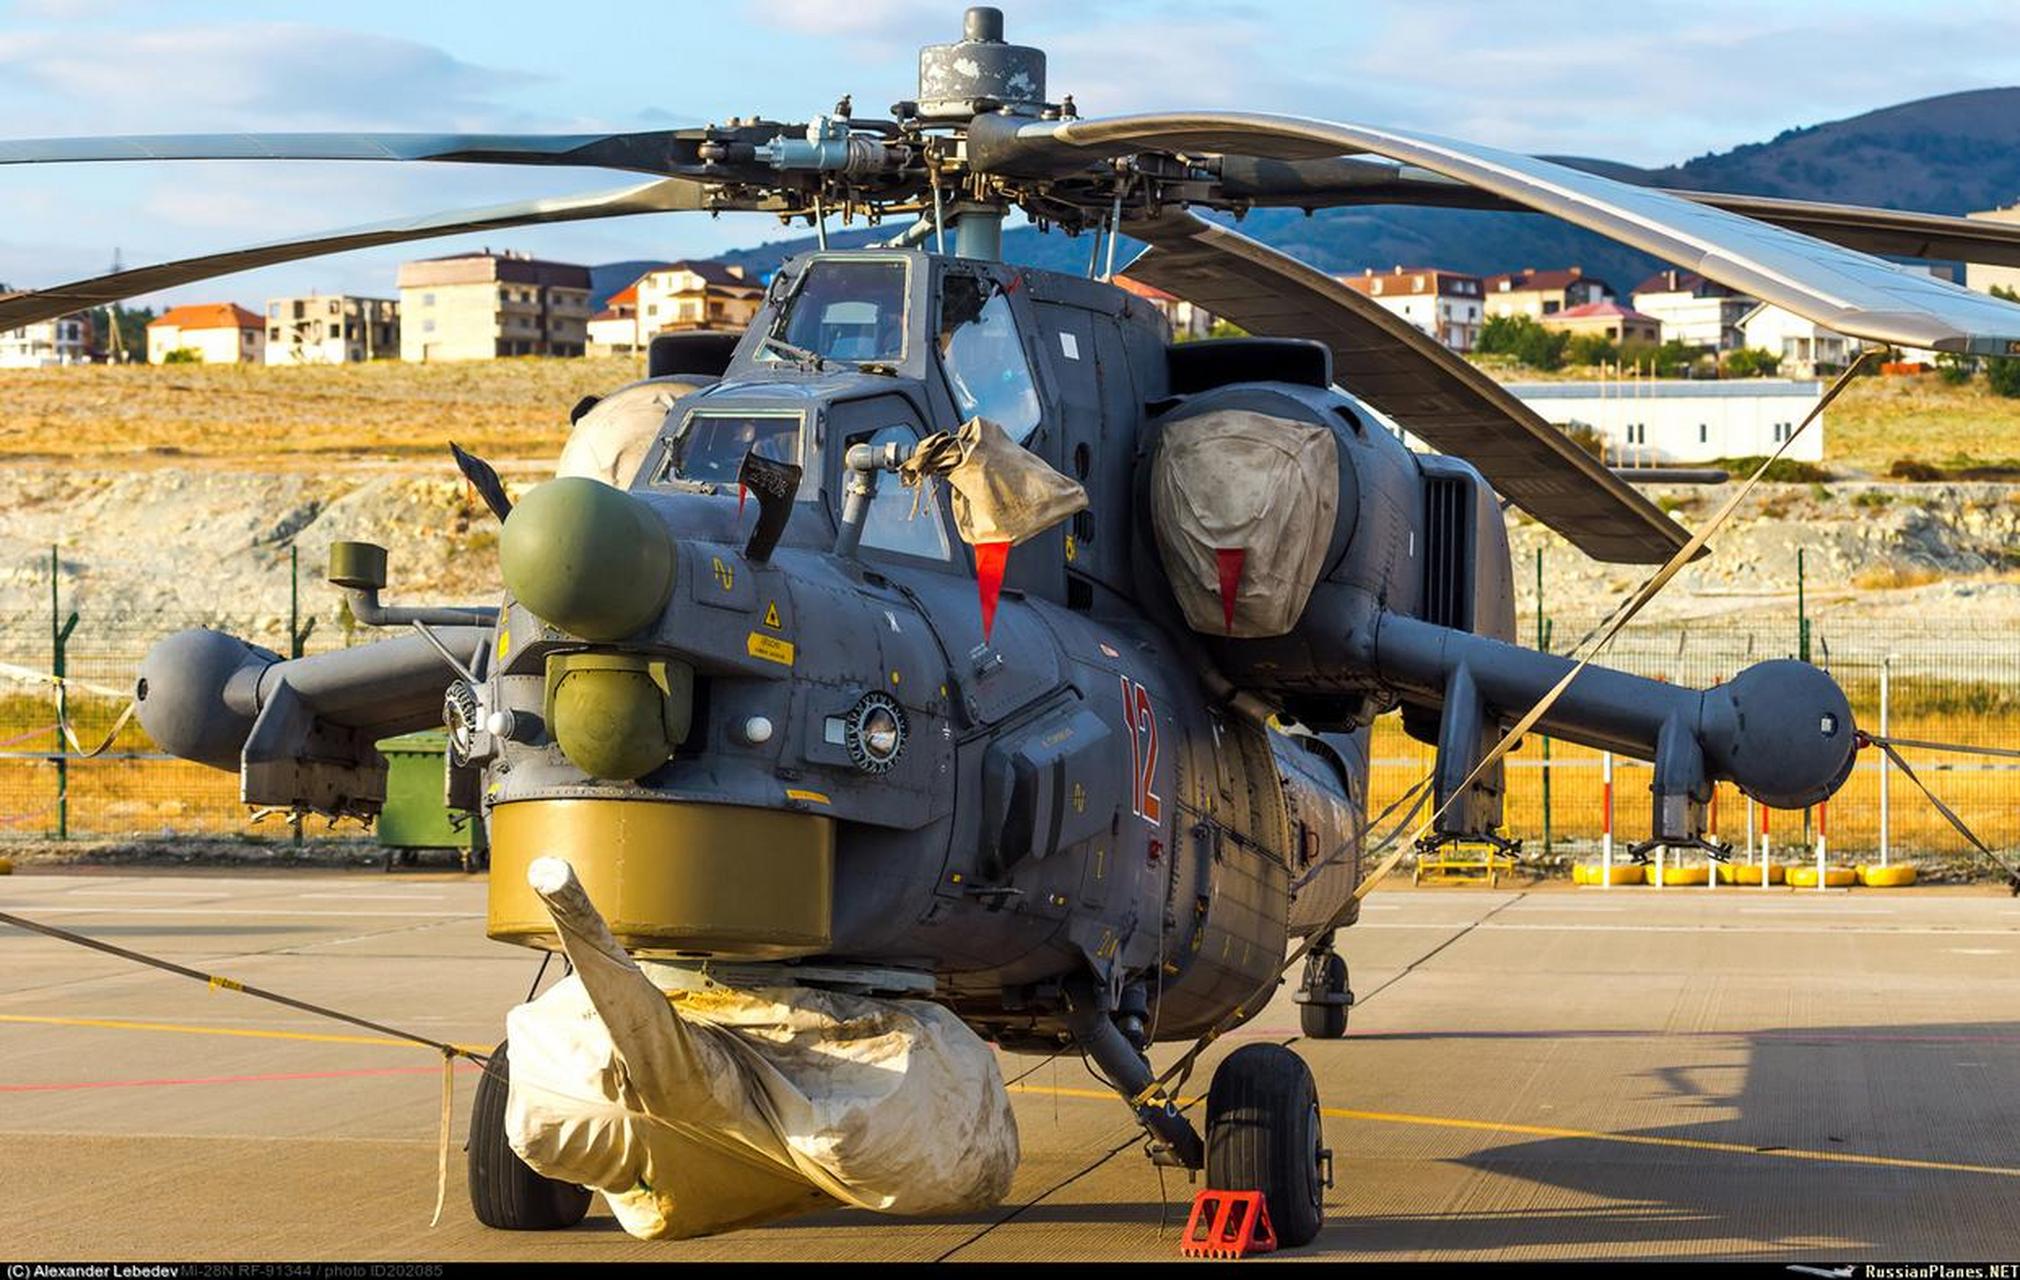 米28浩劫武装直升机,机如其名,整个飞机高大威武给人一种压迫感